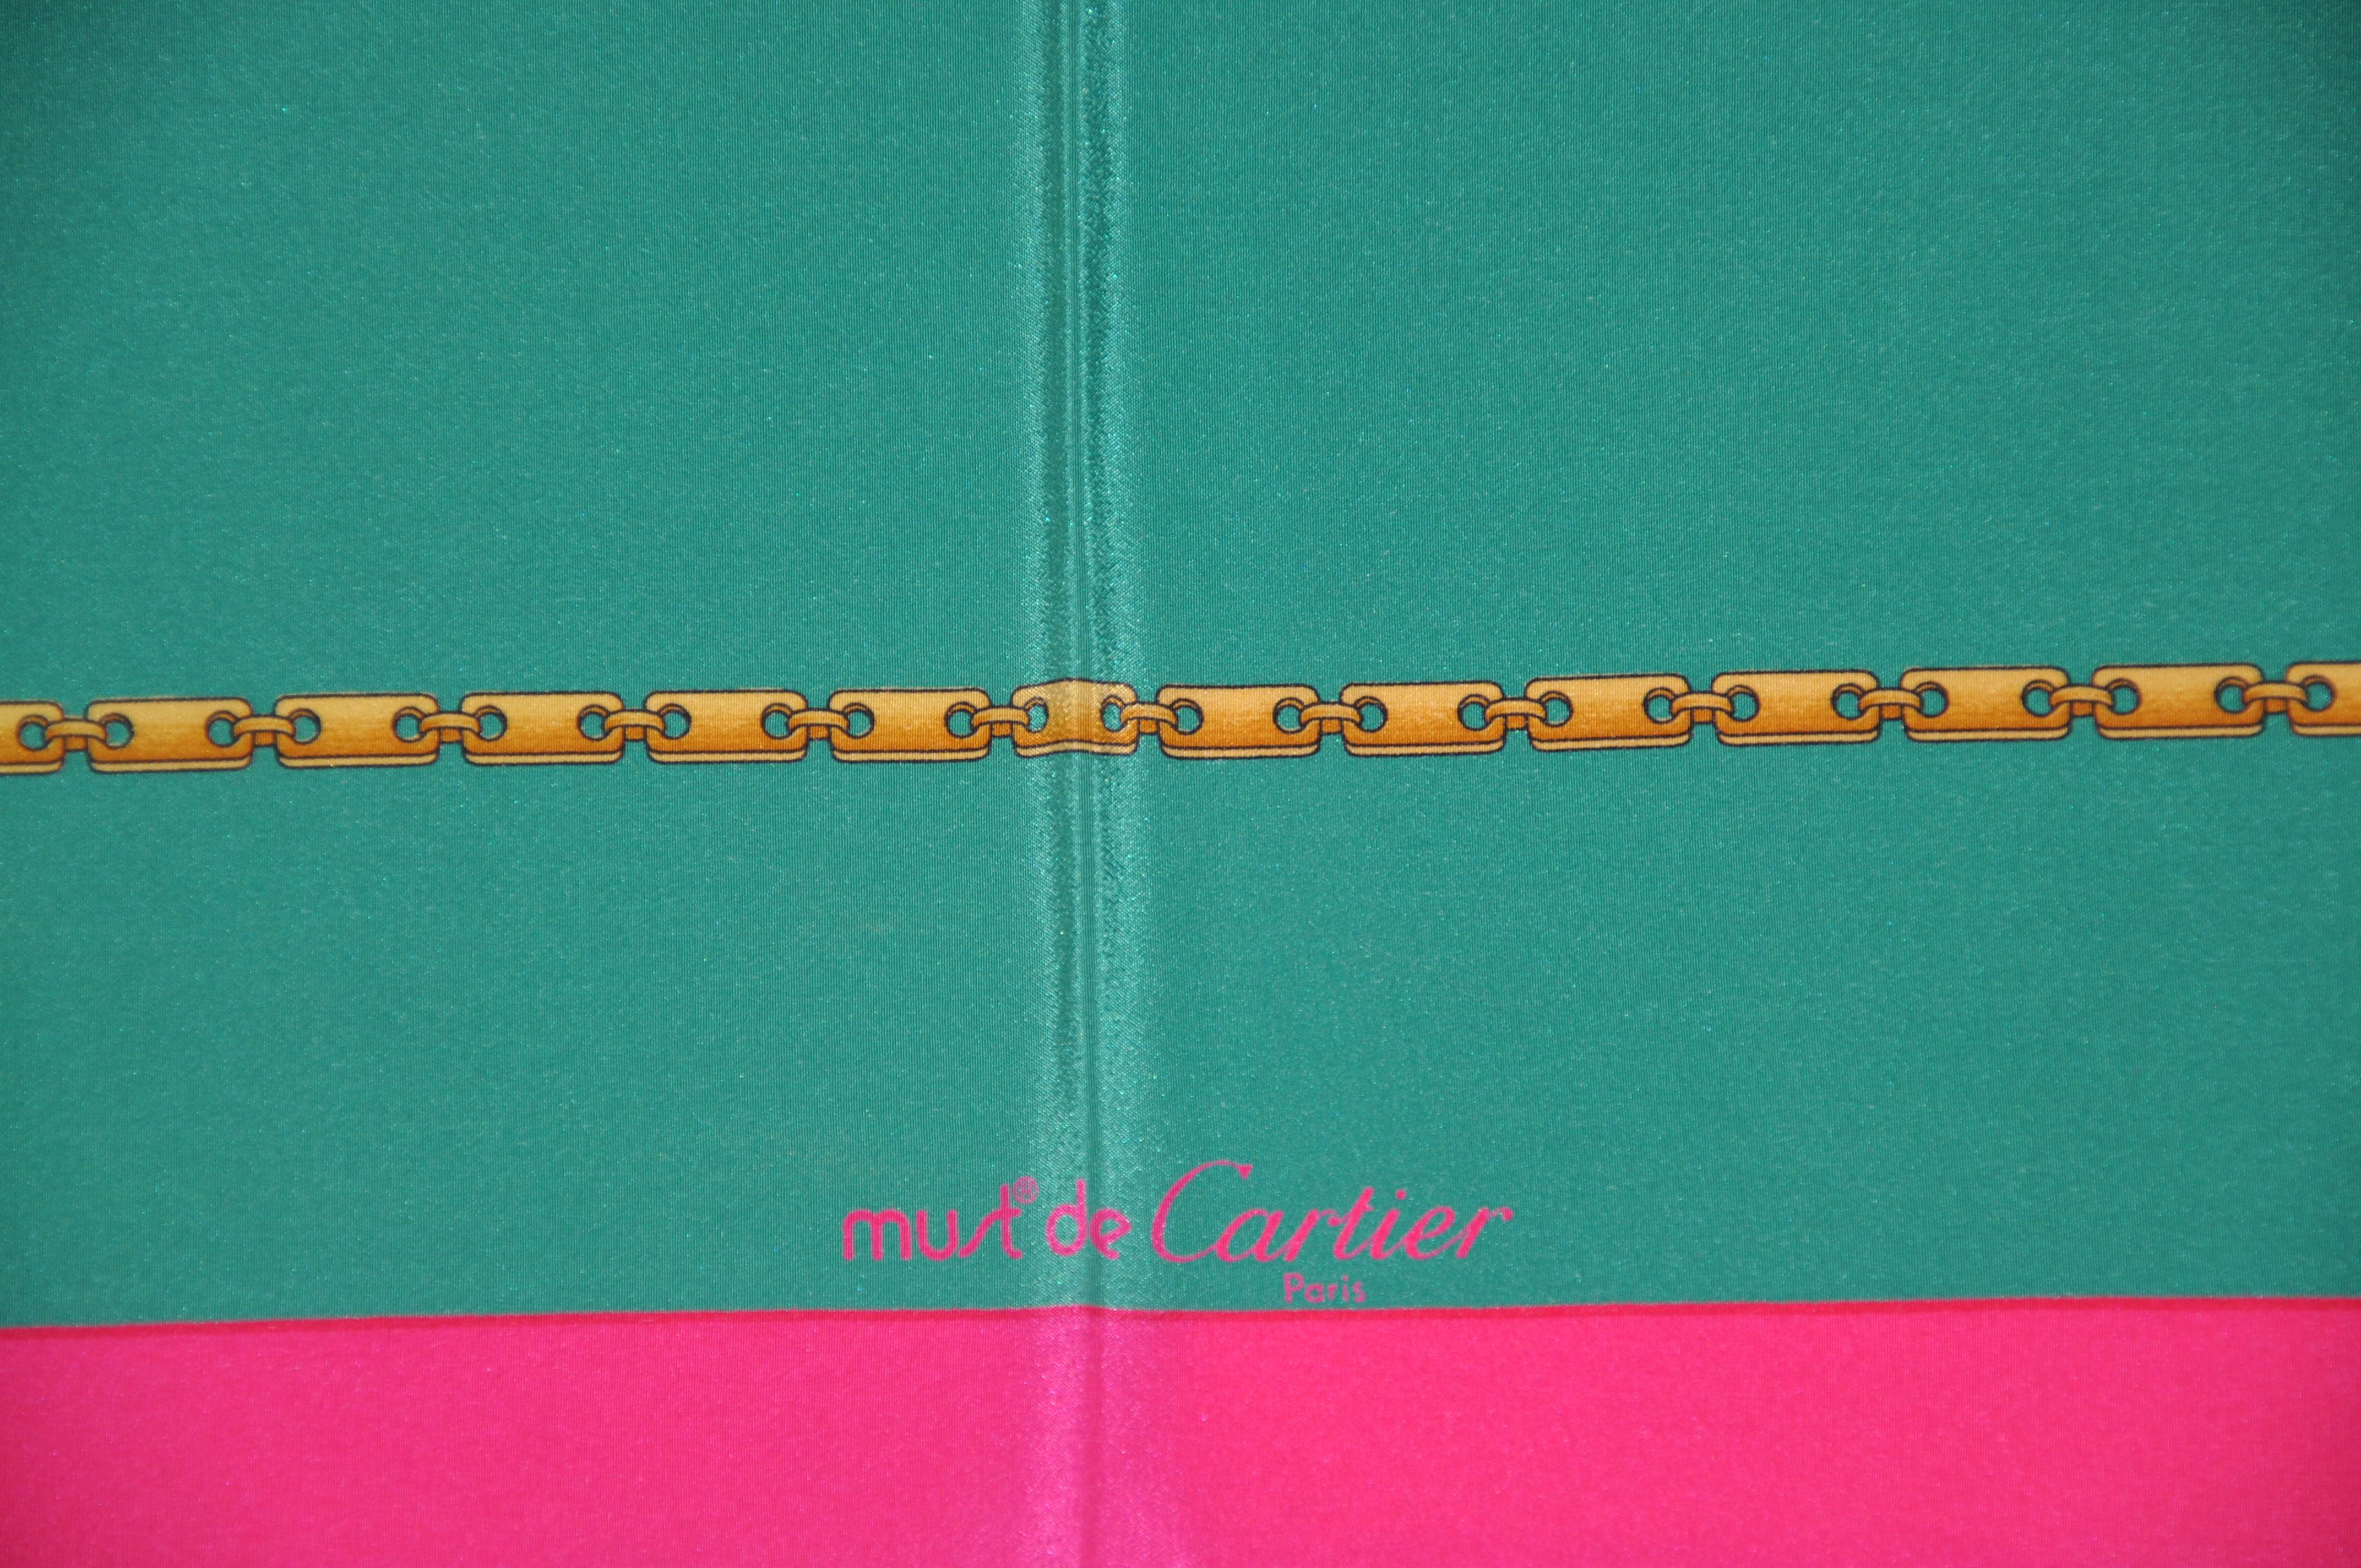     Le foulard de Cartier en crêpe de soie fuchsia riche en néons, entourant des mailles de chaîne vert aqua, est rehaussé de bords roulés à la main. Il mesure 32 pouces par 33 pouces. Fabriqué en France.